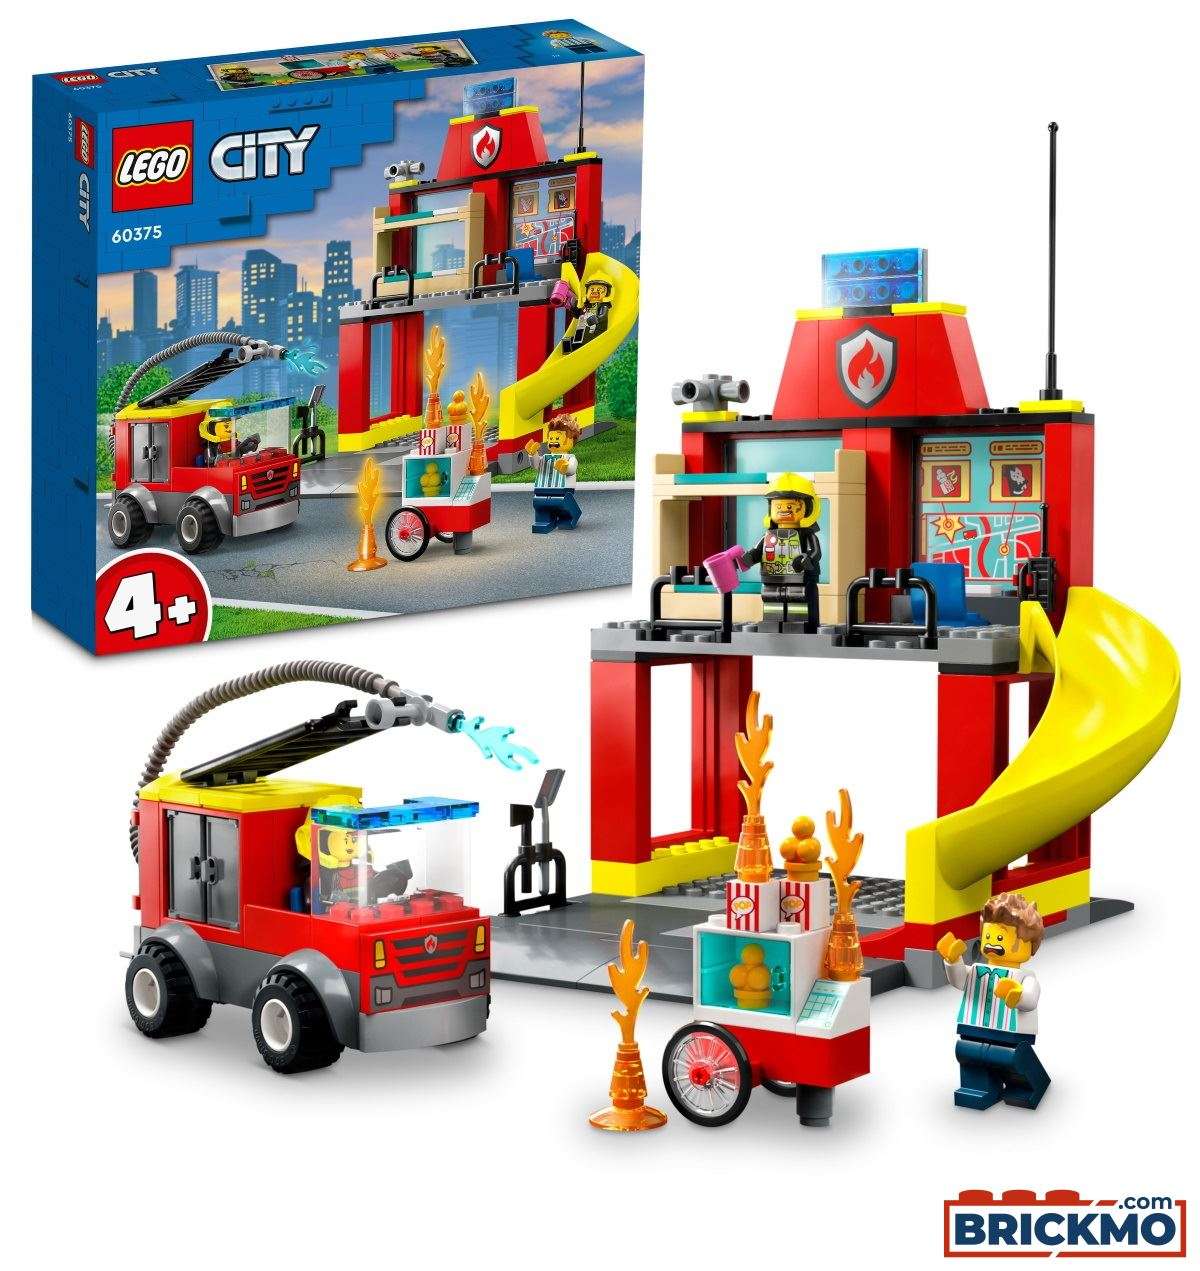 glide banner Farmakologi LEGO City 60375 Brandstation og brandbil 60375 | TRUCKMO.com Lkw-Modelle